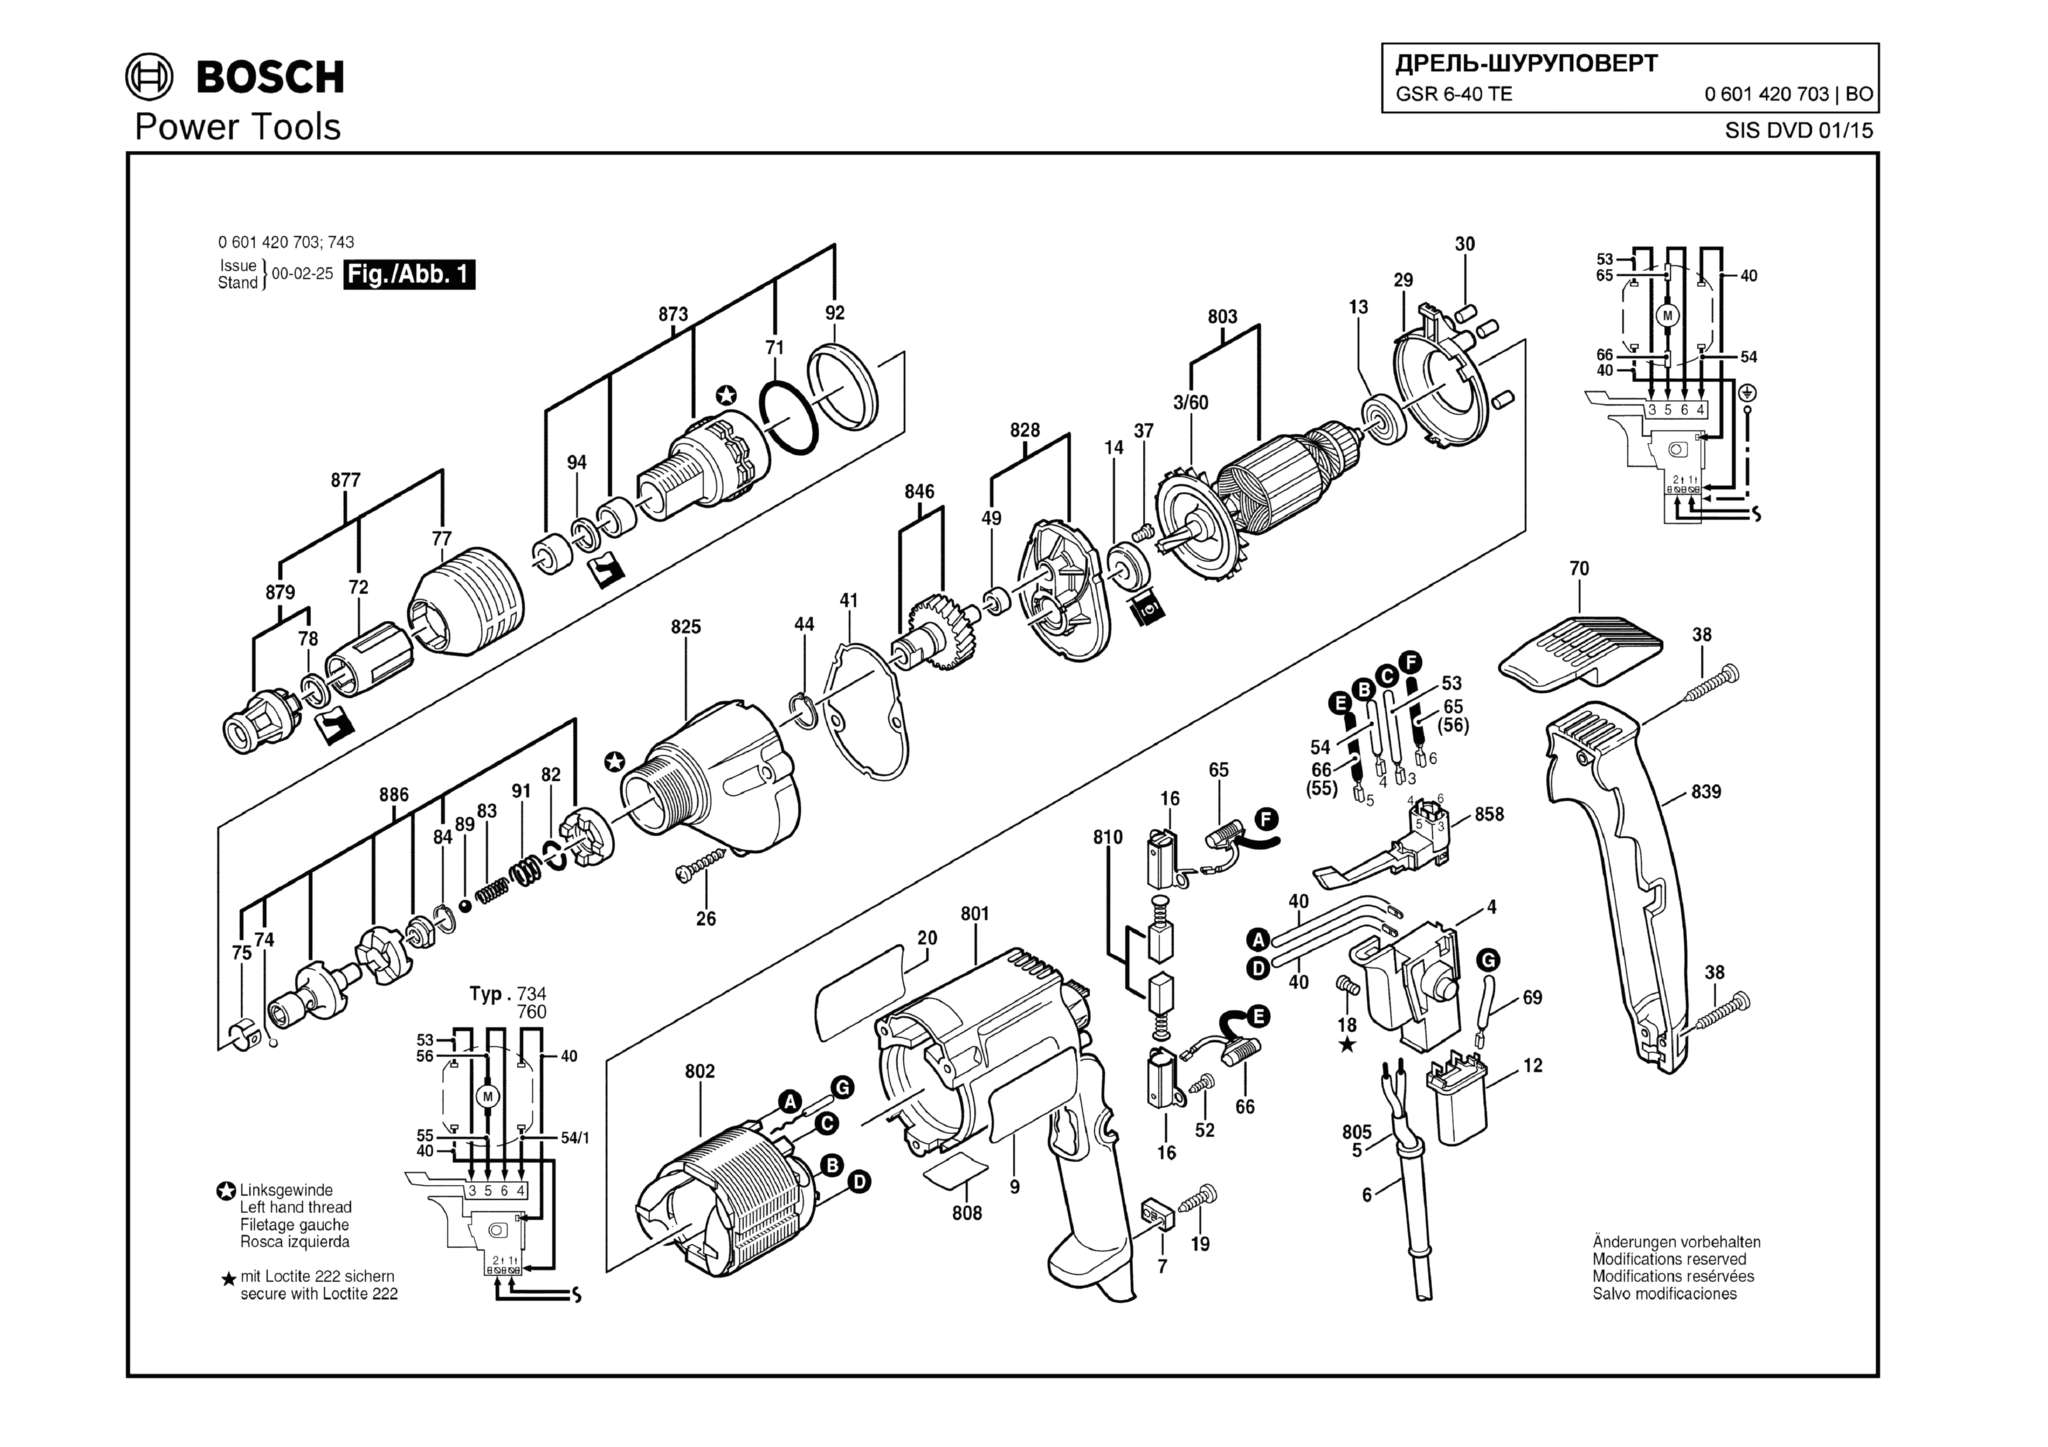 Запчасти, схема и деталировка Bosch GSR 6-40 TE (ТИП 0601420703)